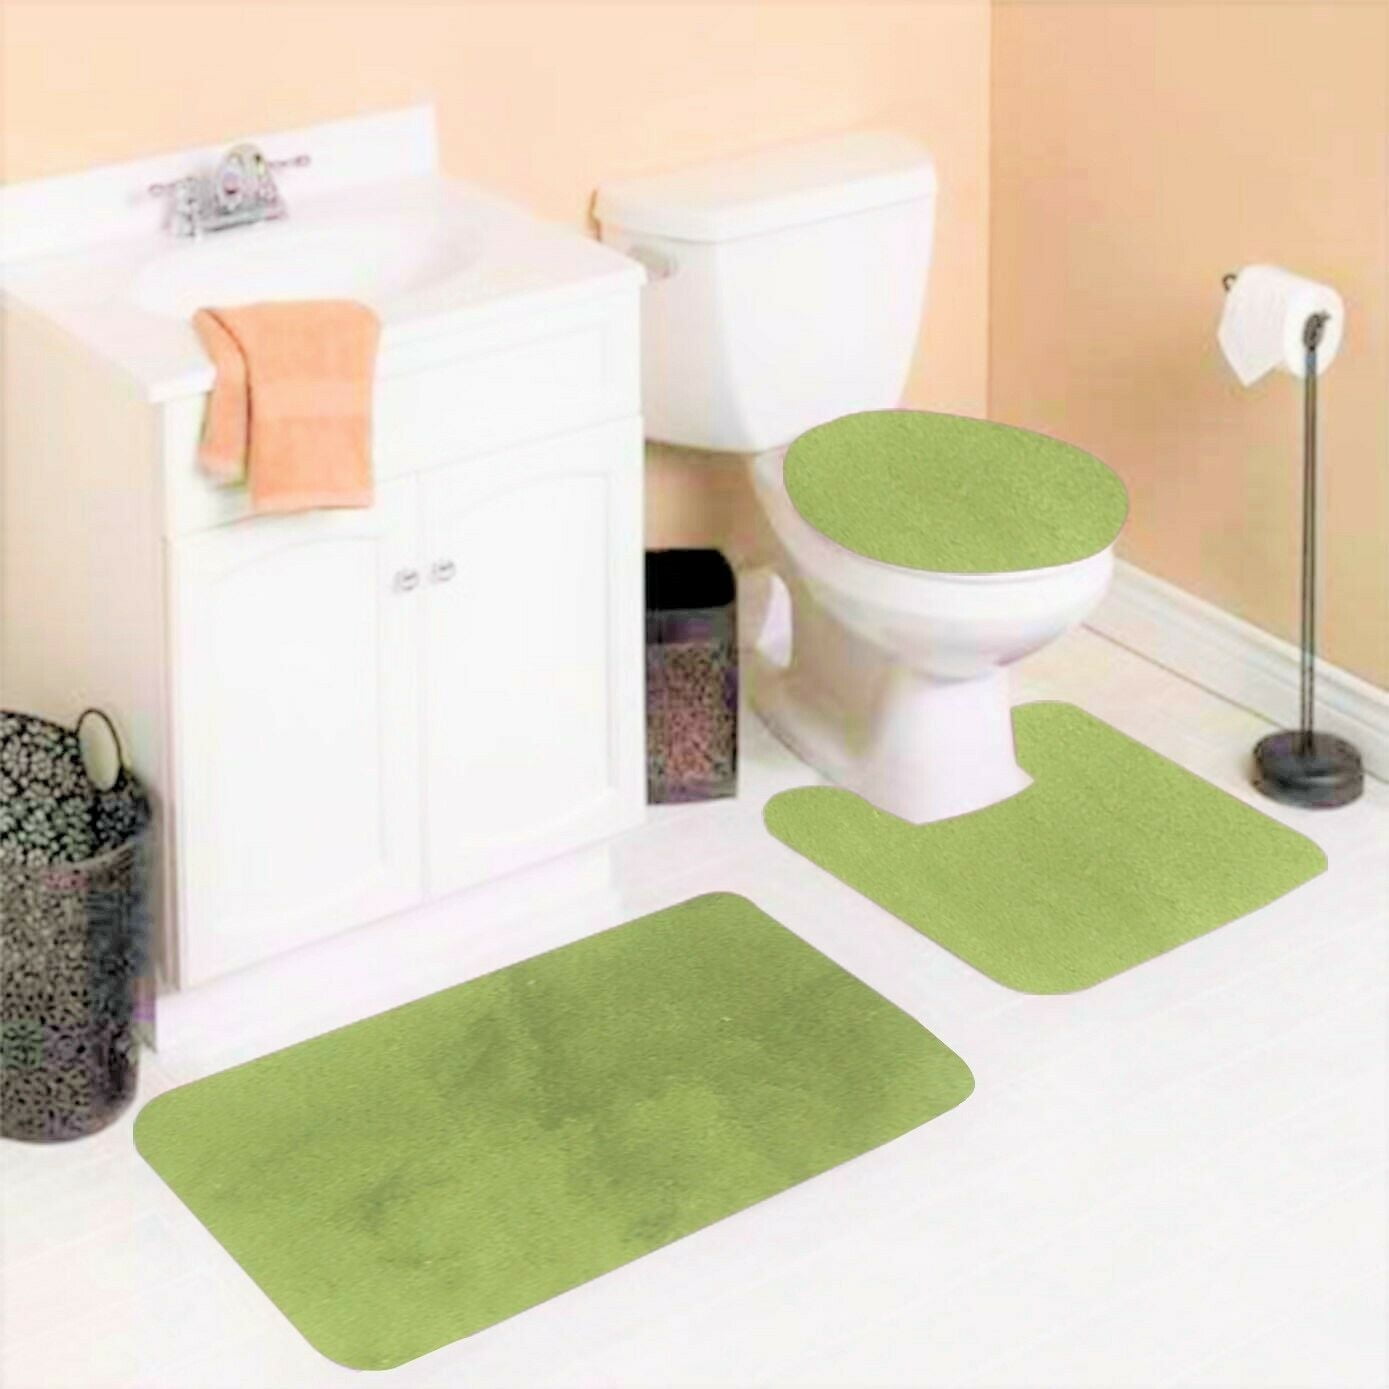 Green Solid Plain Bathroom Mat Set Includes 1 Mat 1 Lid Extra Small Bath  Mats for